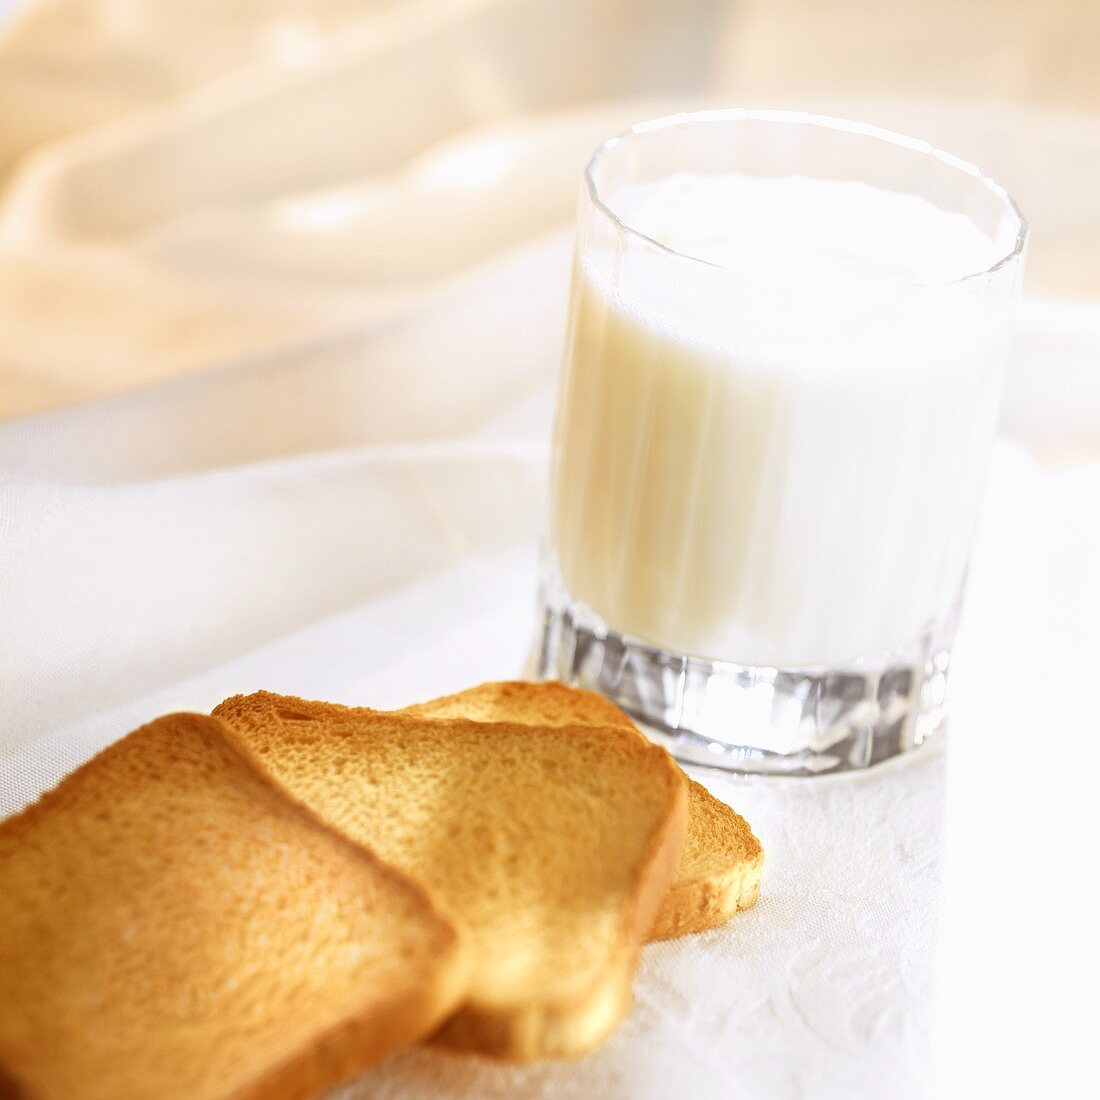 Zwiebackscheiben und Glas Milch